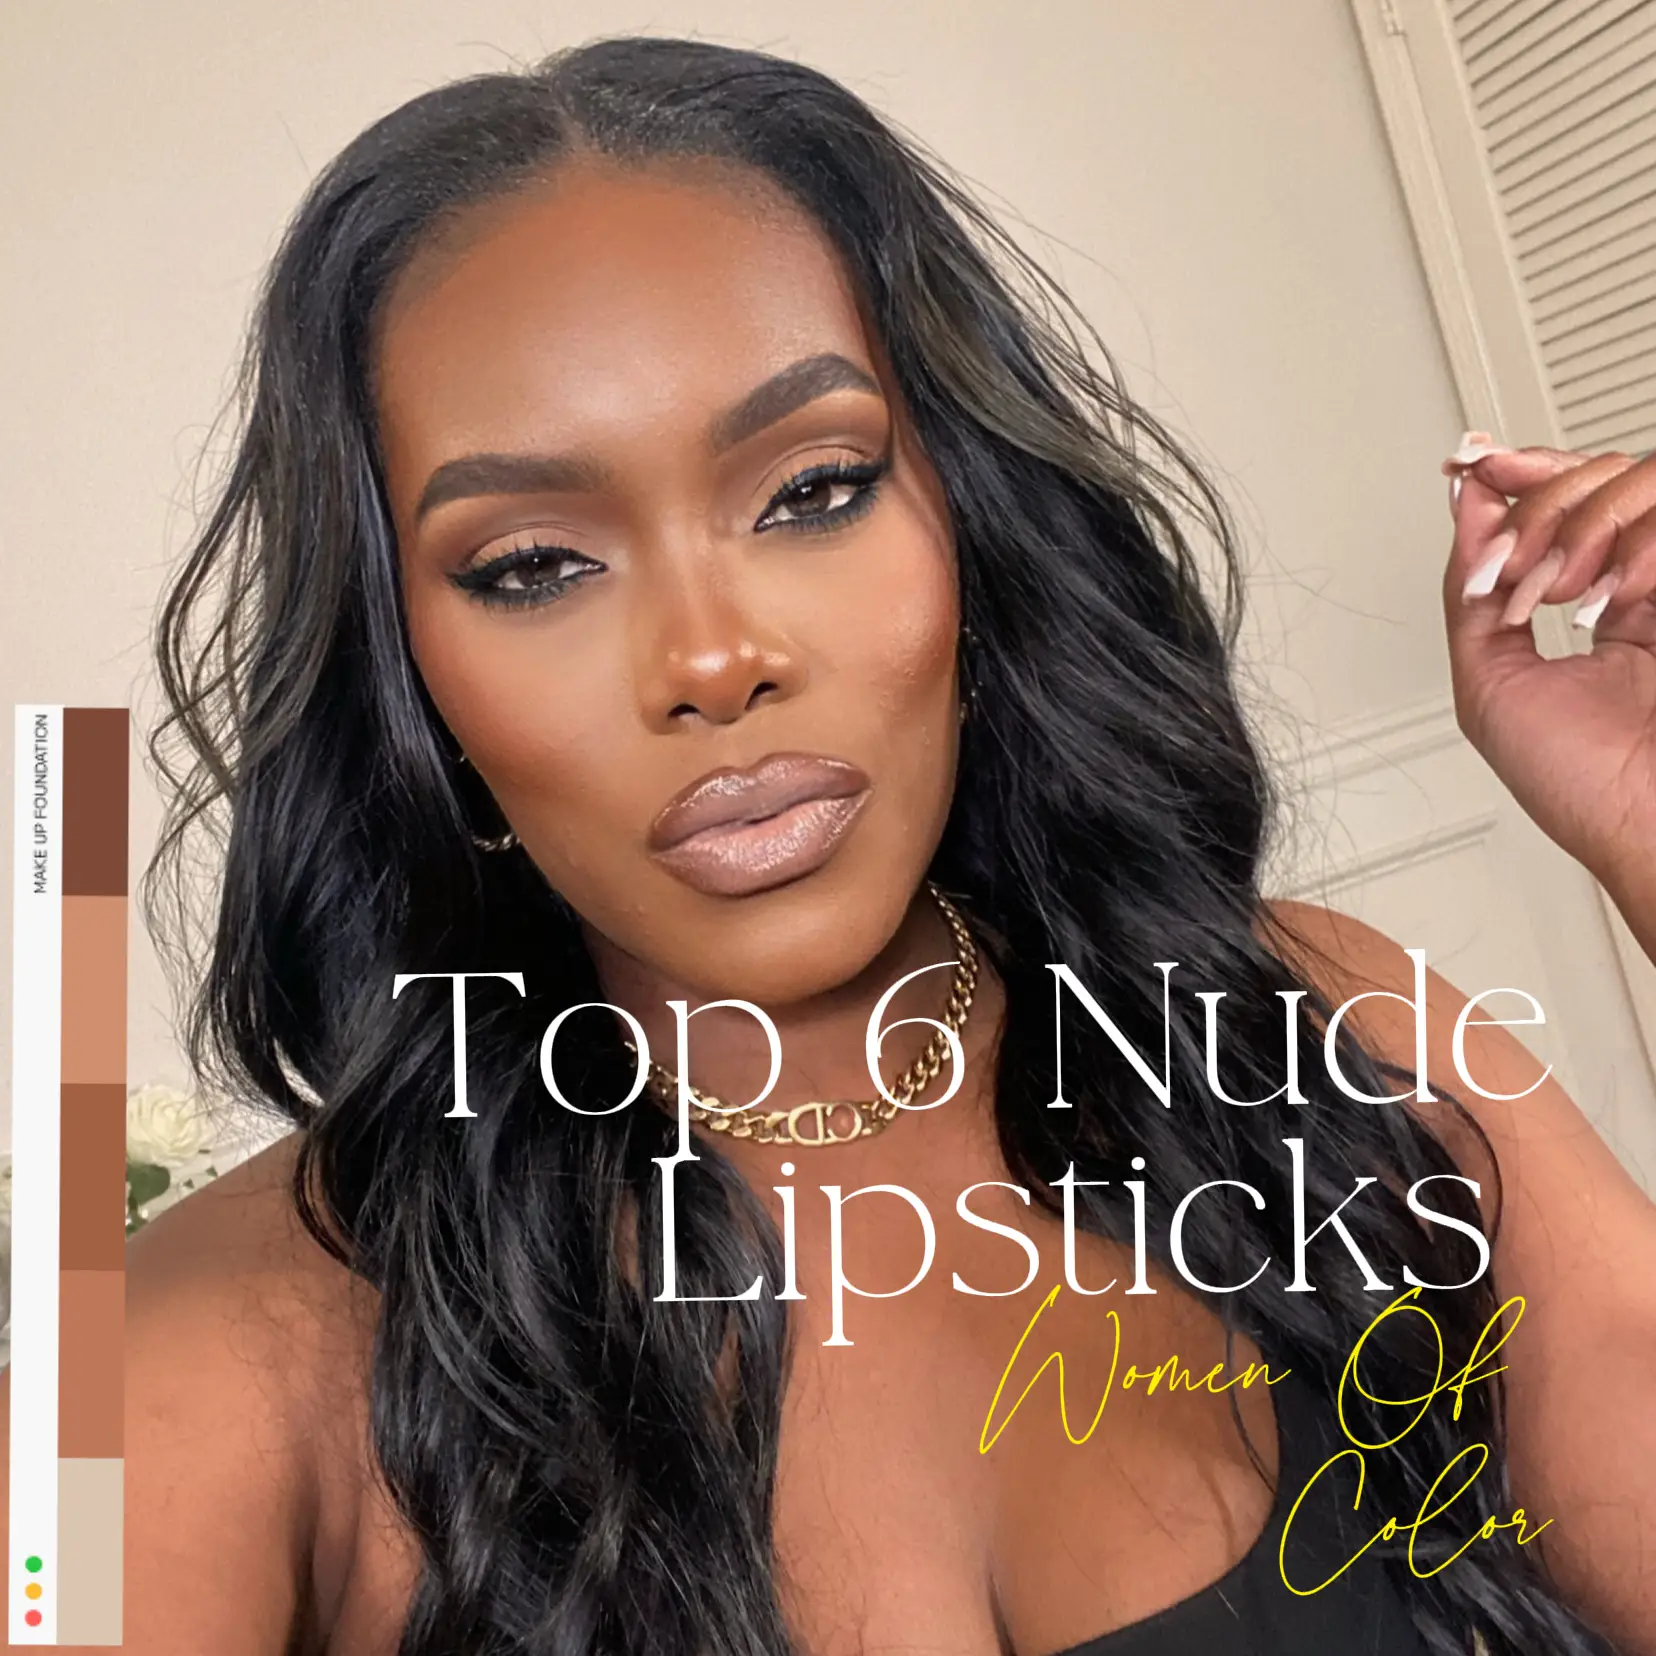 Women of Color Top Nude Lipsticks